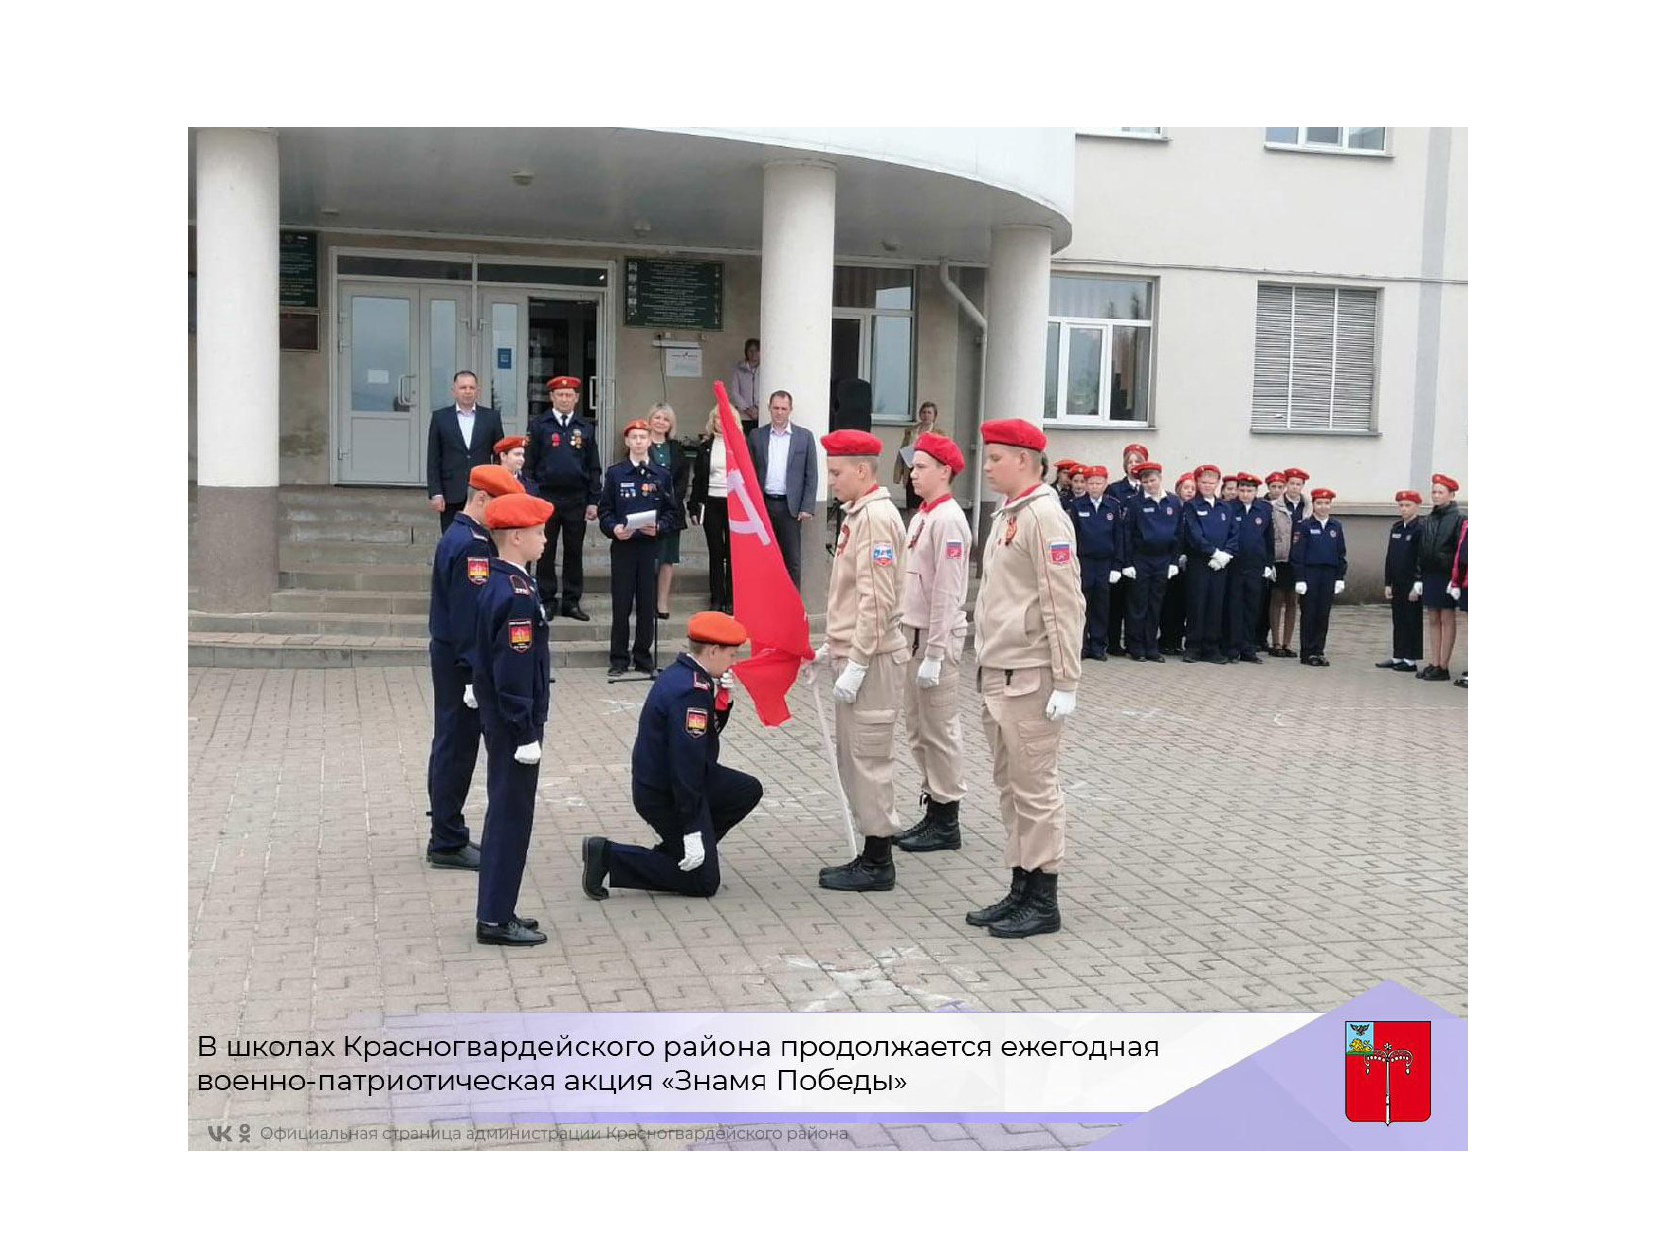 В школах Красногвардейского района продолжается традиционная ежегодная военно-патриотическая акция «Знамя Победы».